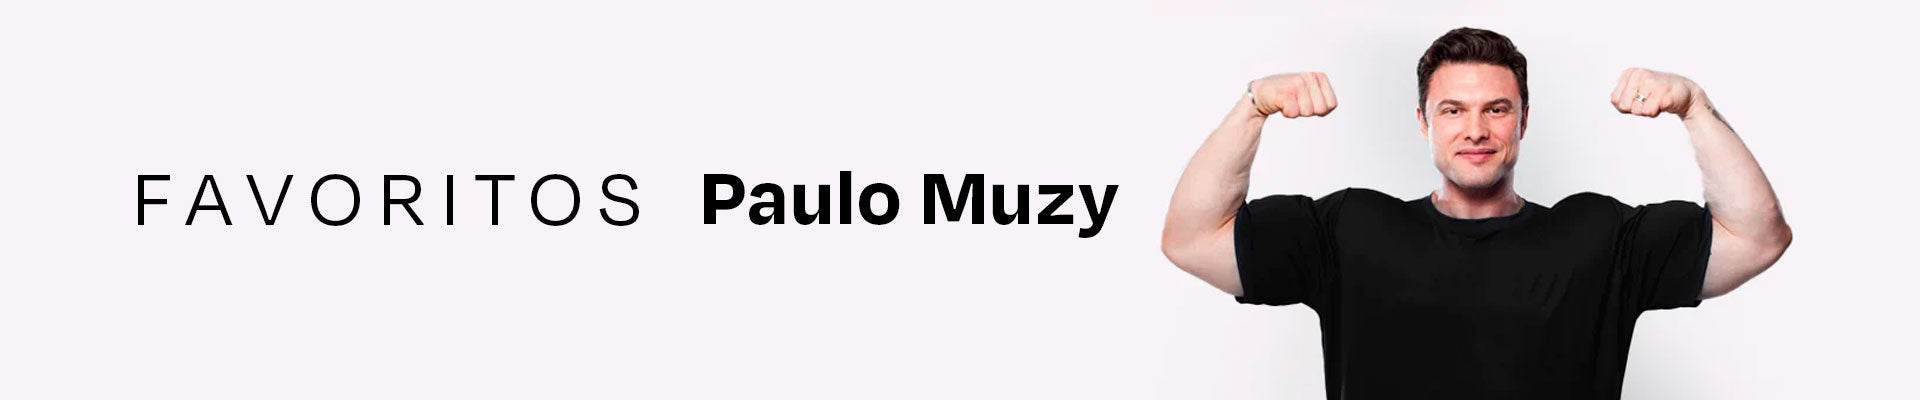 Paulo Muzy